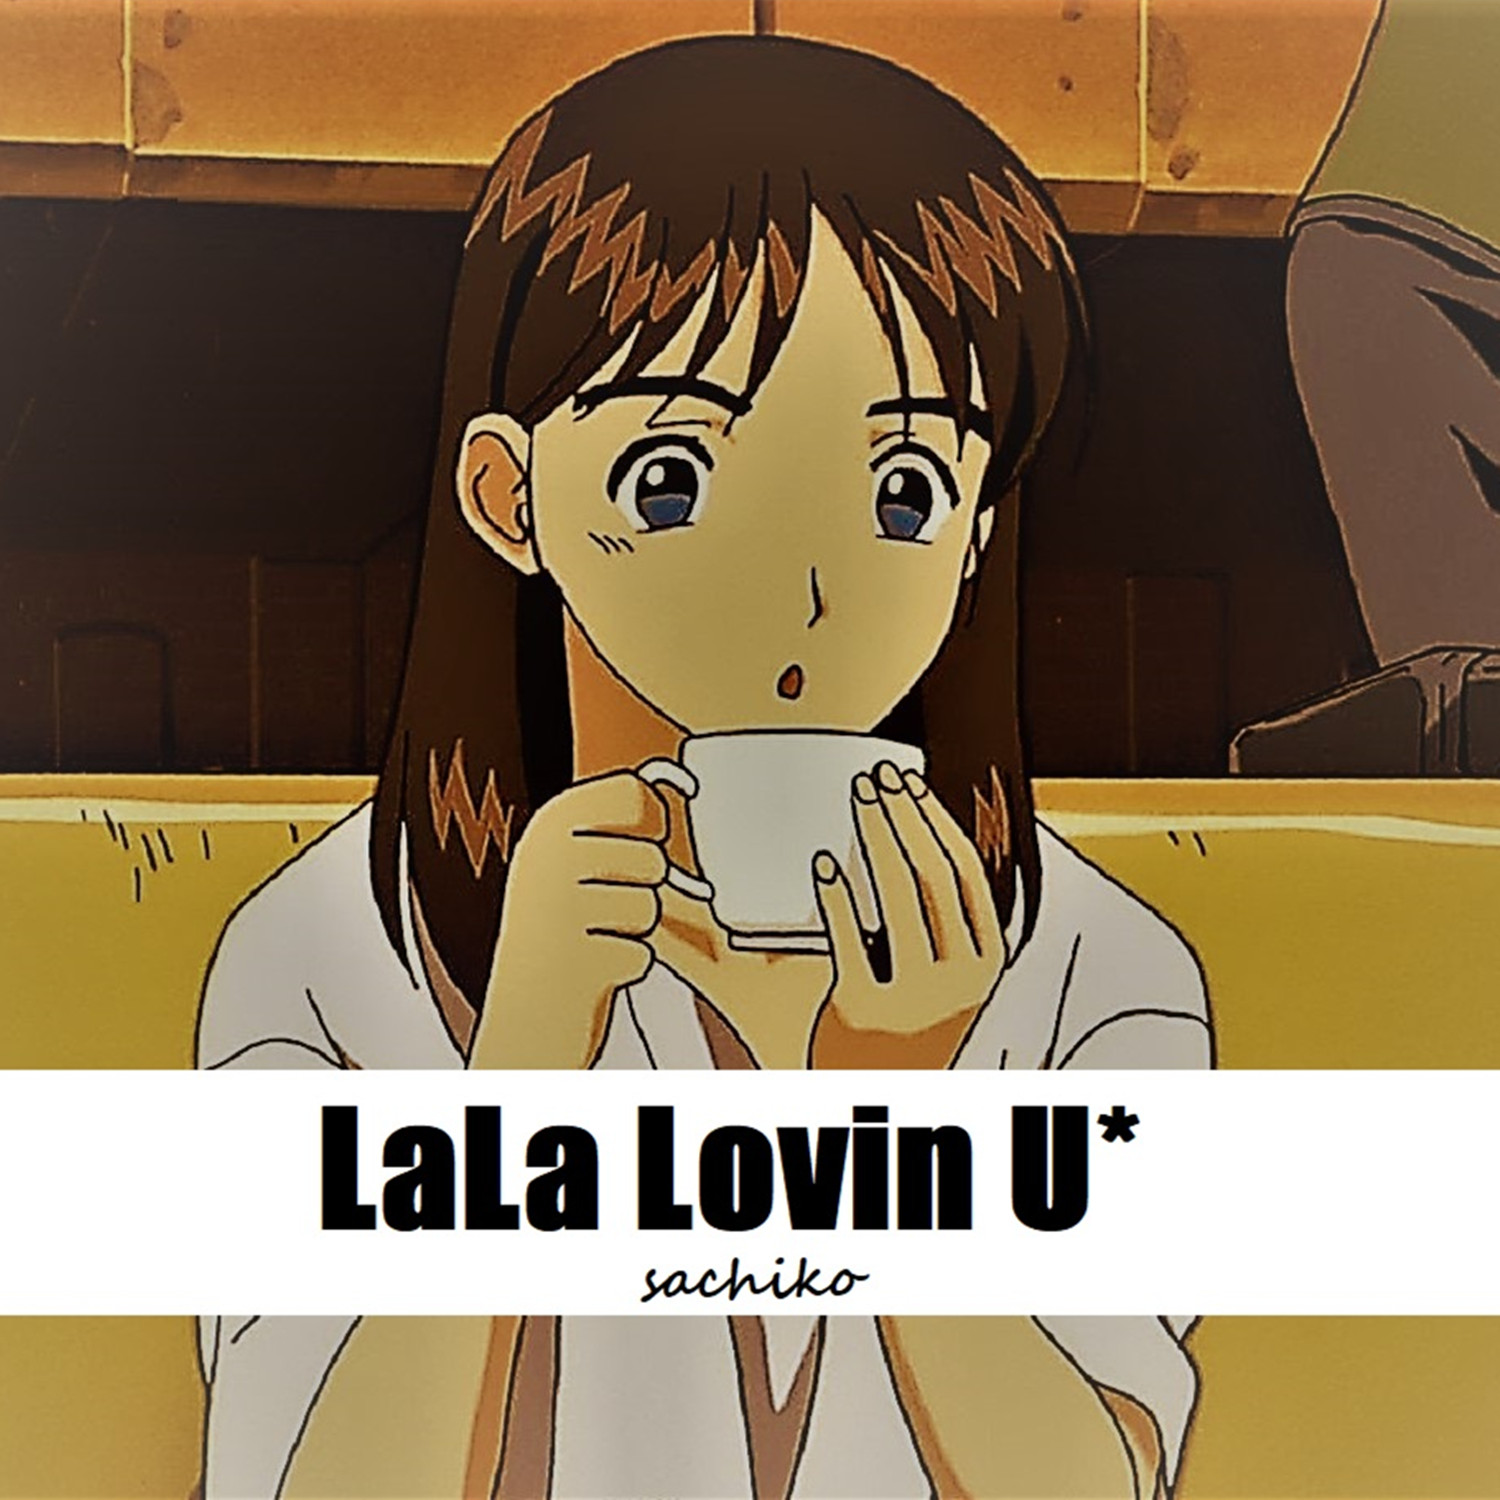 我正在听幸子小姐拜托了的歌曲lala lovin 来自liuxiao